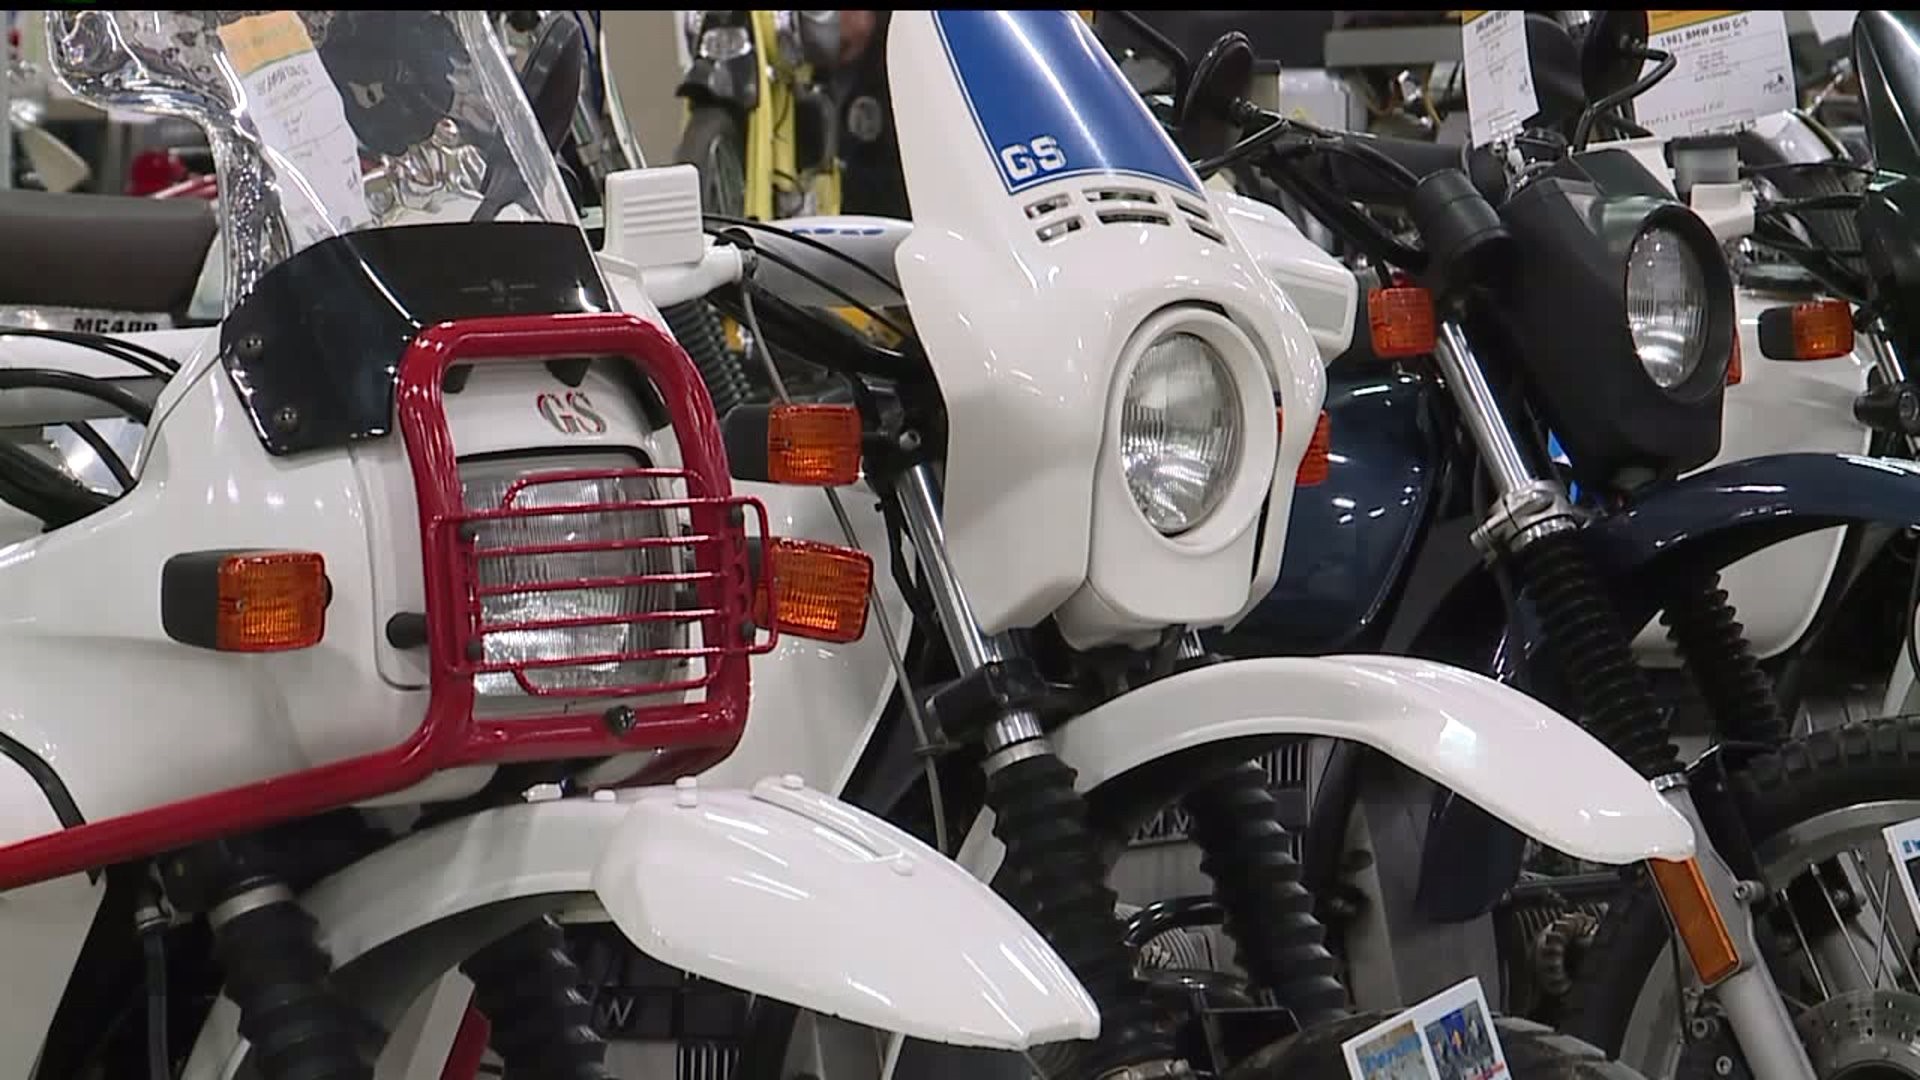 Potomac Vintage Riders swap meet brings in riders to celebrate motorcycles